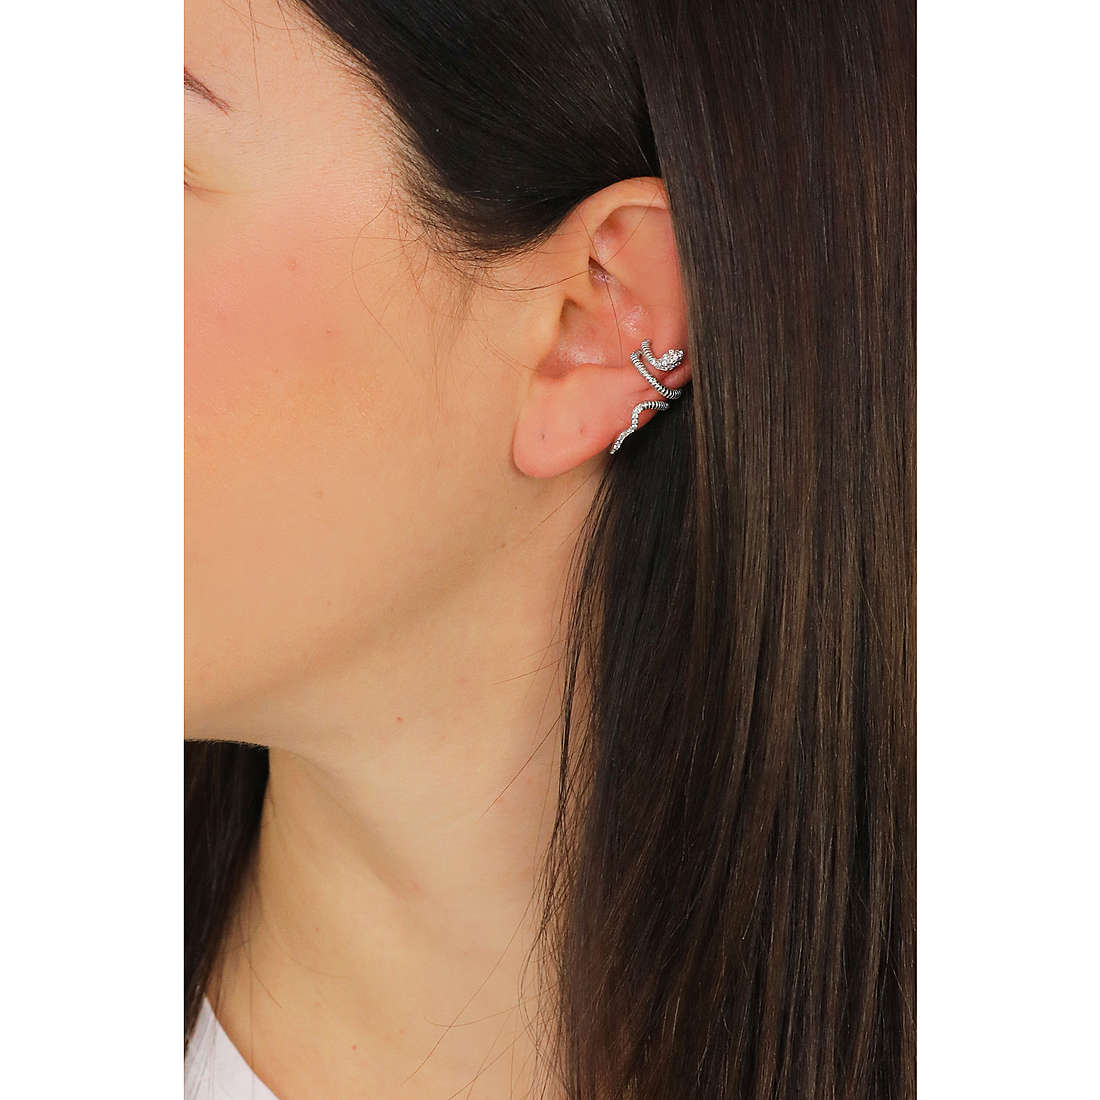 Rebecca earrings Golden ear woman SGEOBB28 wearing